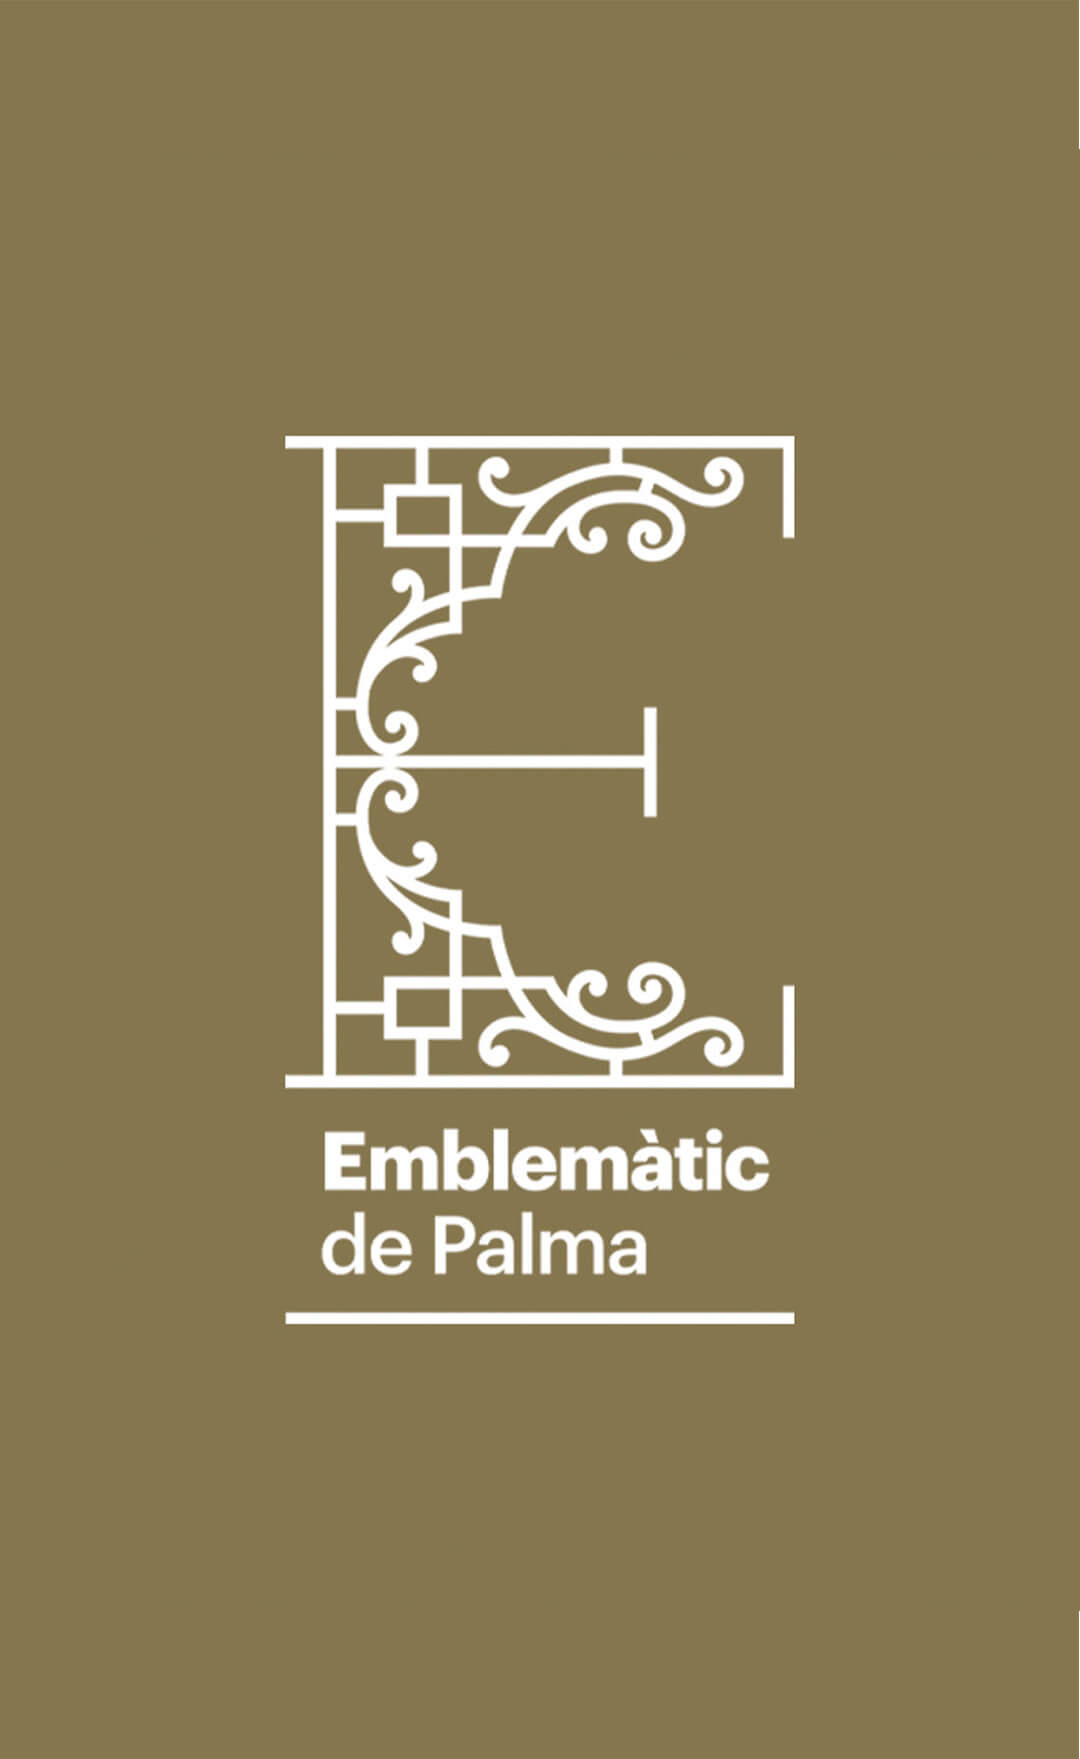 establiment-emblematic-de-palma-identidad-drbb.studio-2